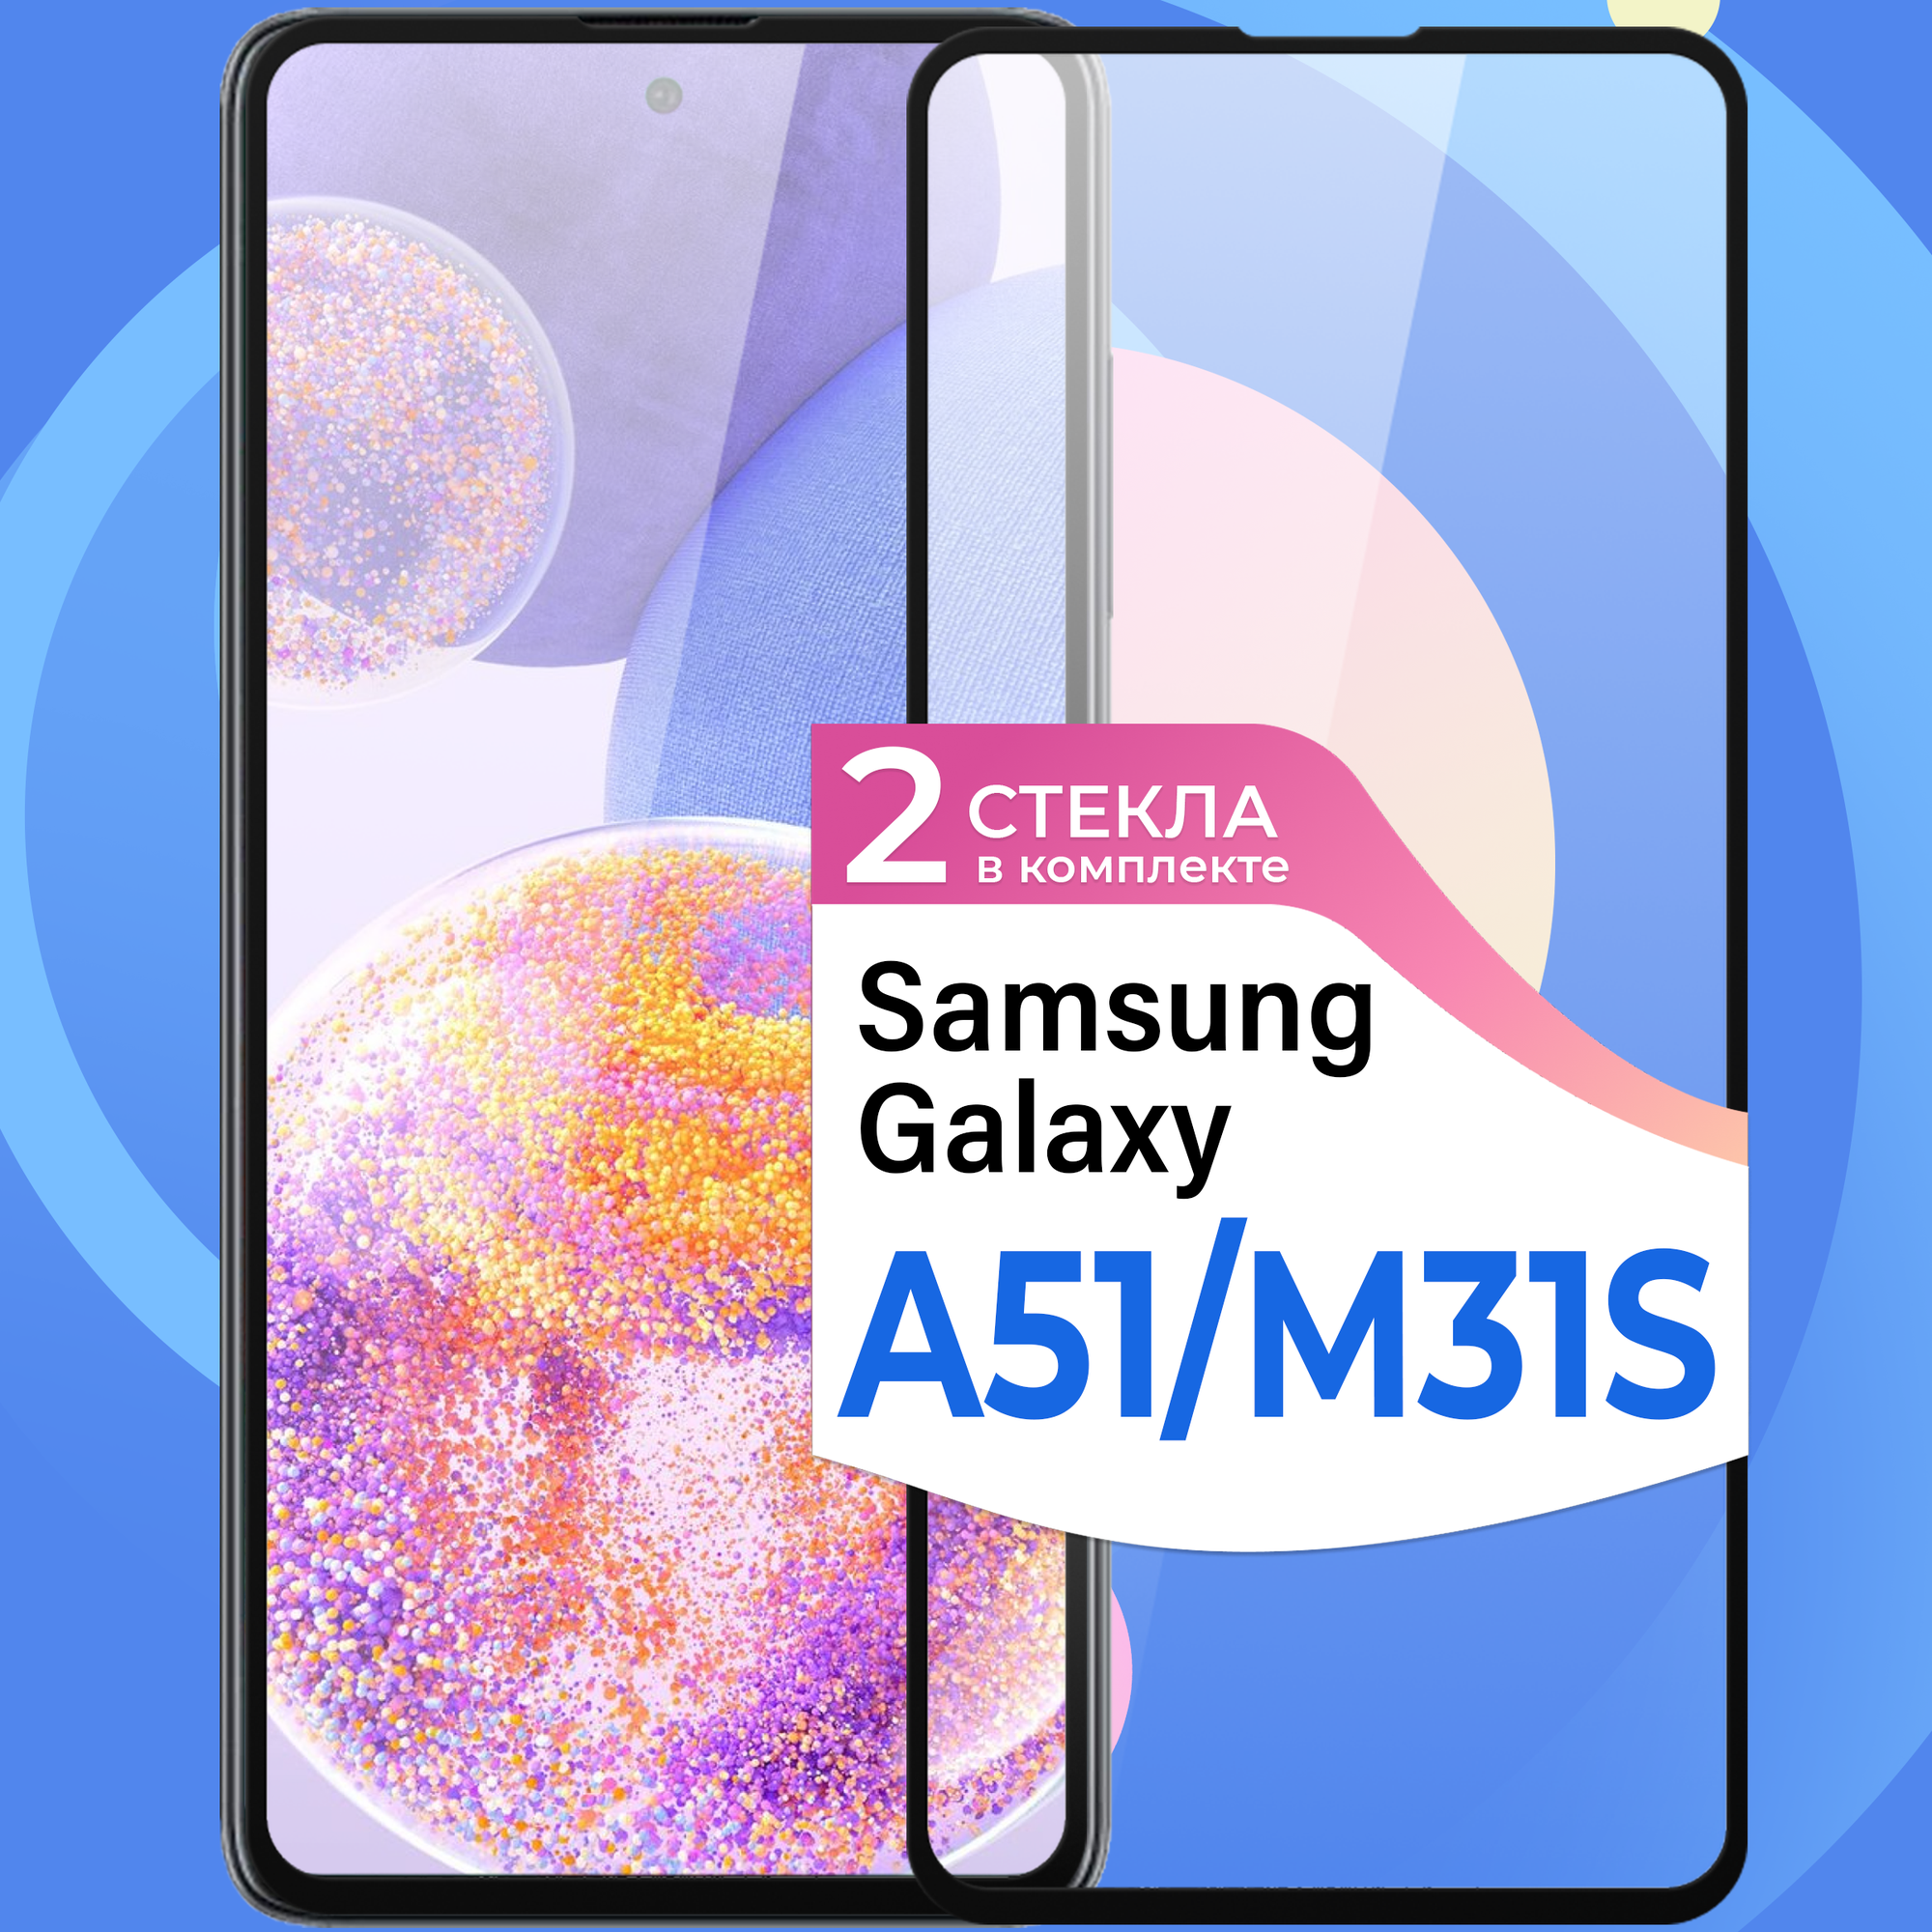 Комплект 2 шт. Противоударное стекло для смартфона Samsung Galaxy A51 и Samsung Galaxy M31S / Защитное стекло на телефон Самсунг Галакси А51 и М31С